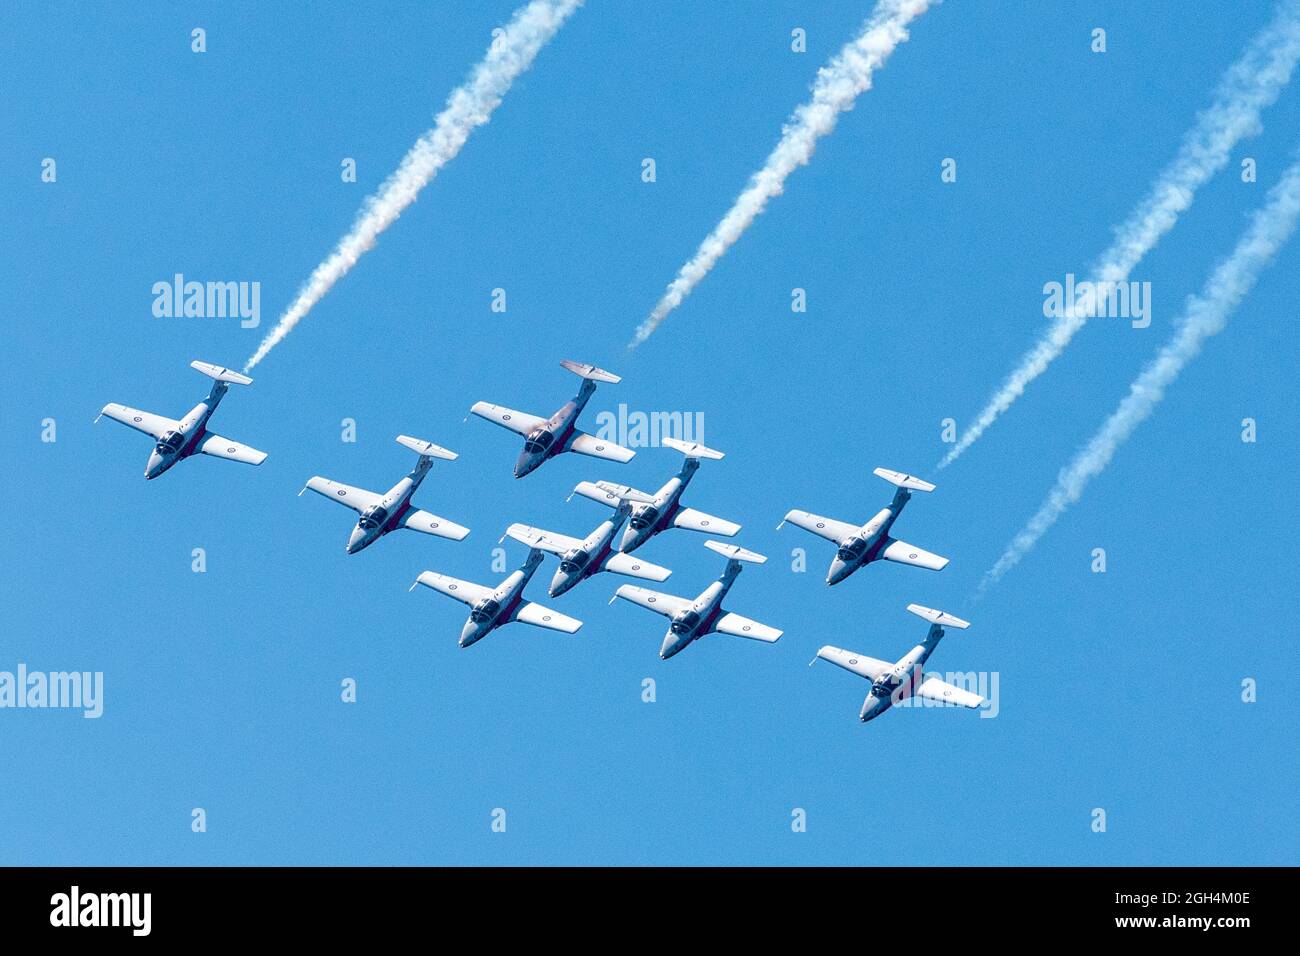 Flugzeuge der Canadian Forces (CF) Snowbirds, 431 Air Demonstration Squadron fliegen in Formation während der Canadian International Air Show (CIAS) Stockfoto